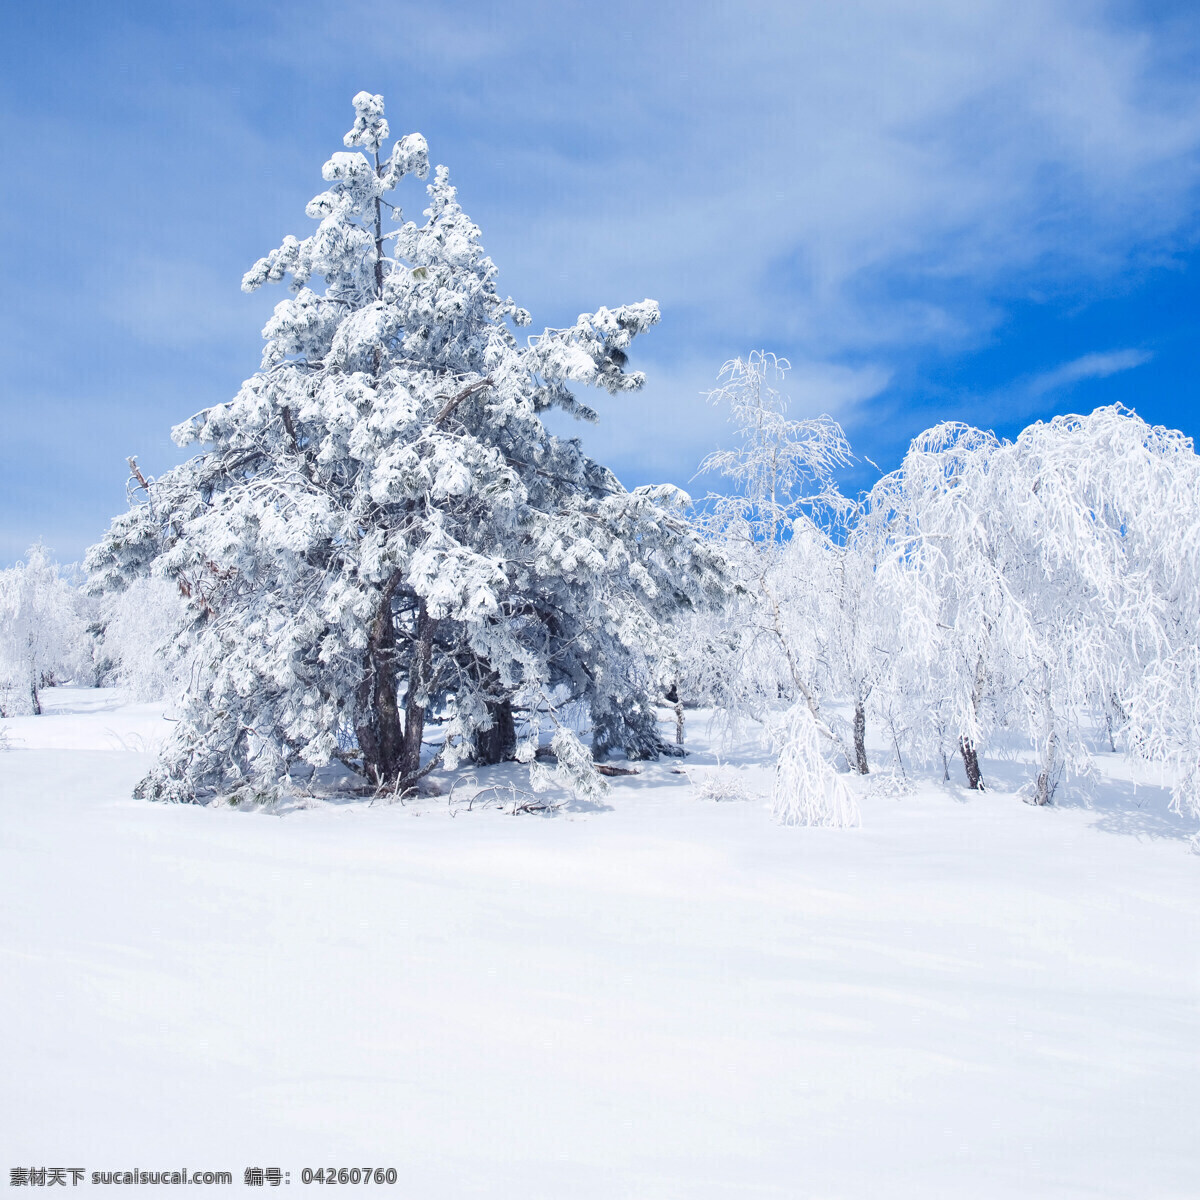 下雪的景观 冬季 冬天 雪景 美丽风景 景色 美景 积雪 雪地 森林 树木 自然风景 自然景观 白色